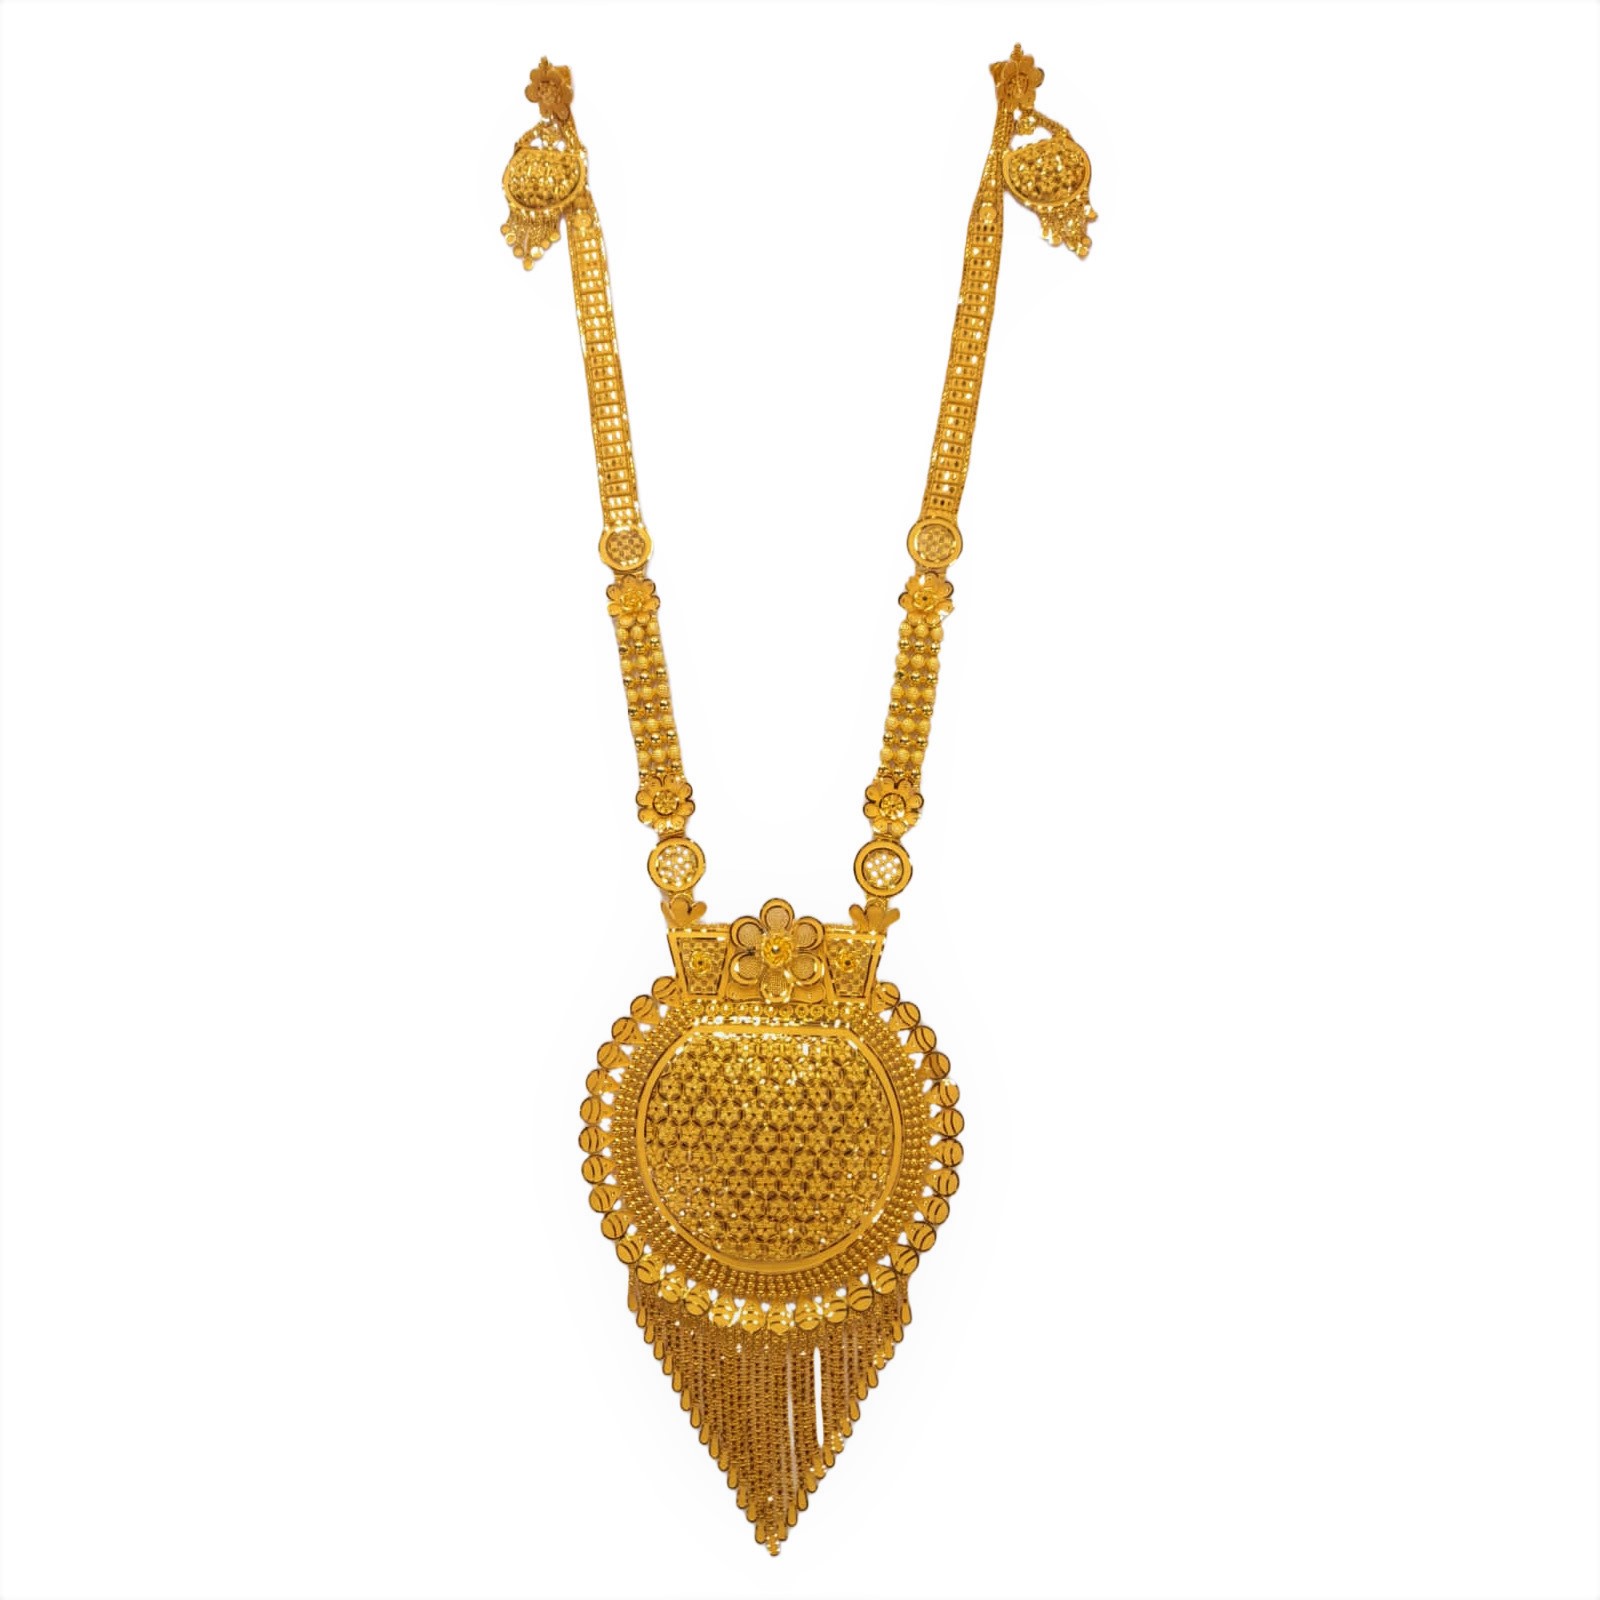 GUINEA 22k GOLD NECKLACE SET - Guinea - The Hallmark Jewellers